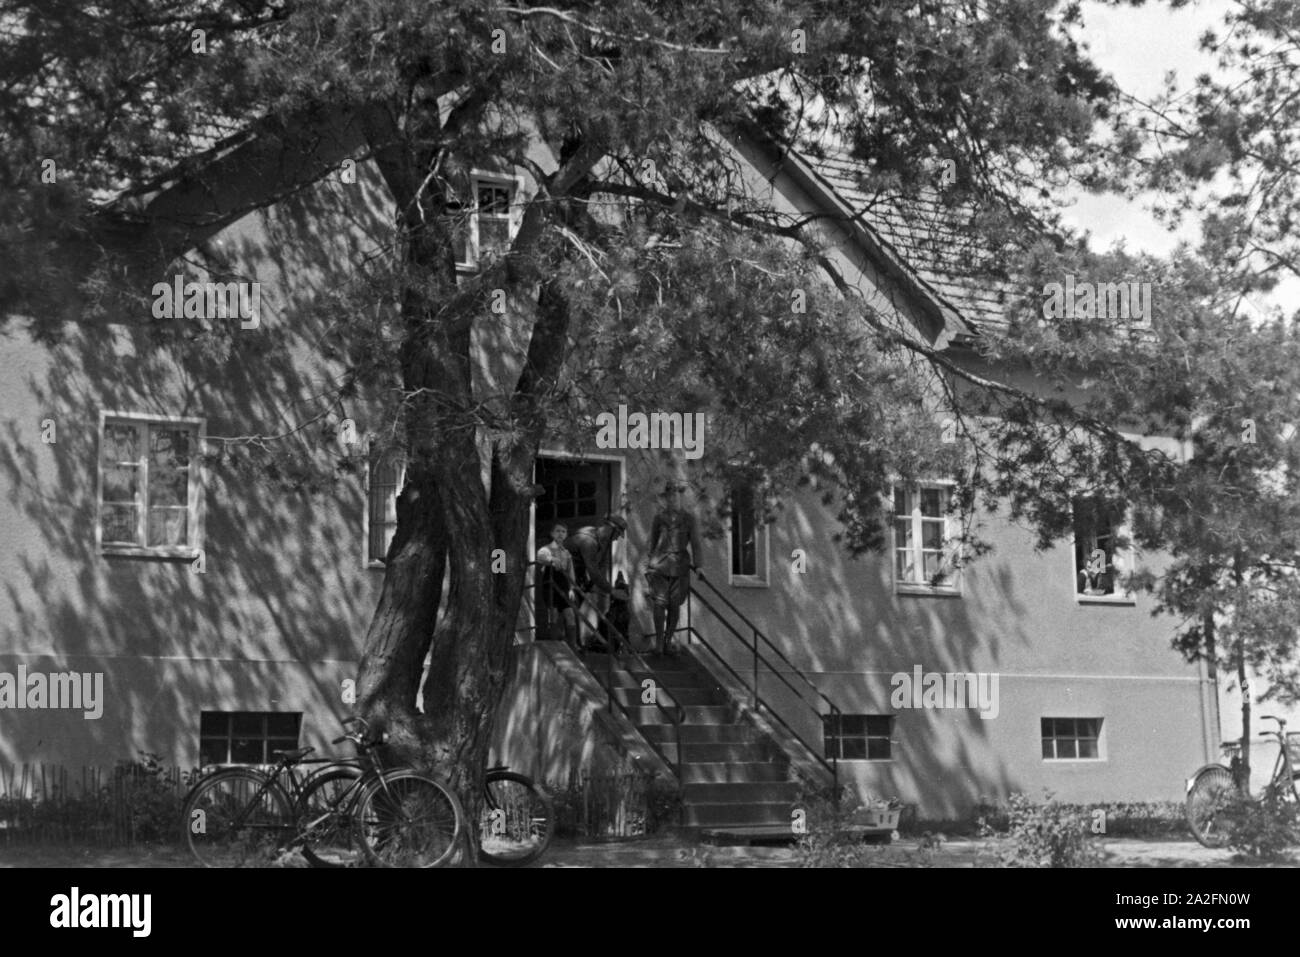 Forsthaus als Wohn- und Dienstsitz eines Försters, Deutschland 1930er Jahre. Forster's lodge, Germany 1930s. Stock Photo